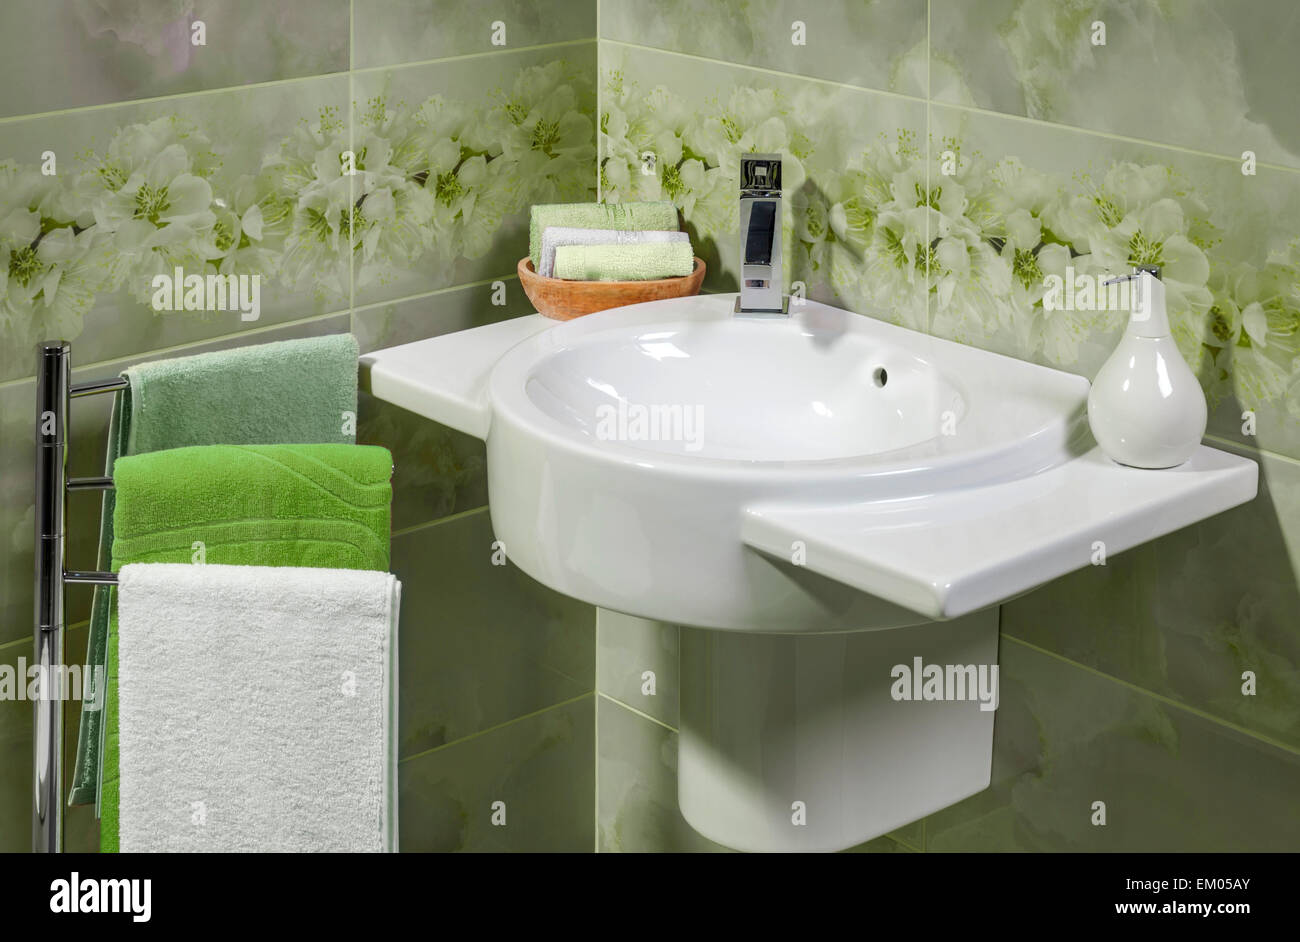 Détail d'une salle de bains moderne avec lavabo, serviettes et accessoires pour savon Banque D'Images